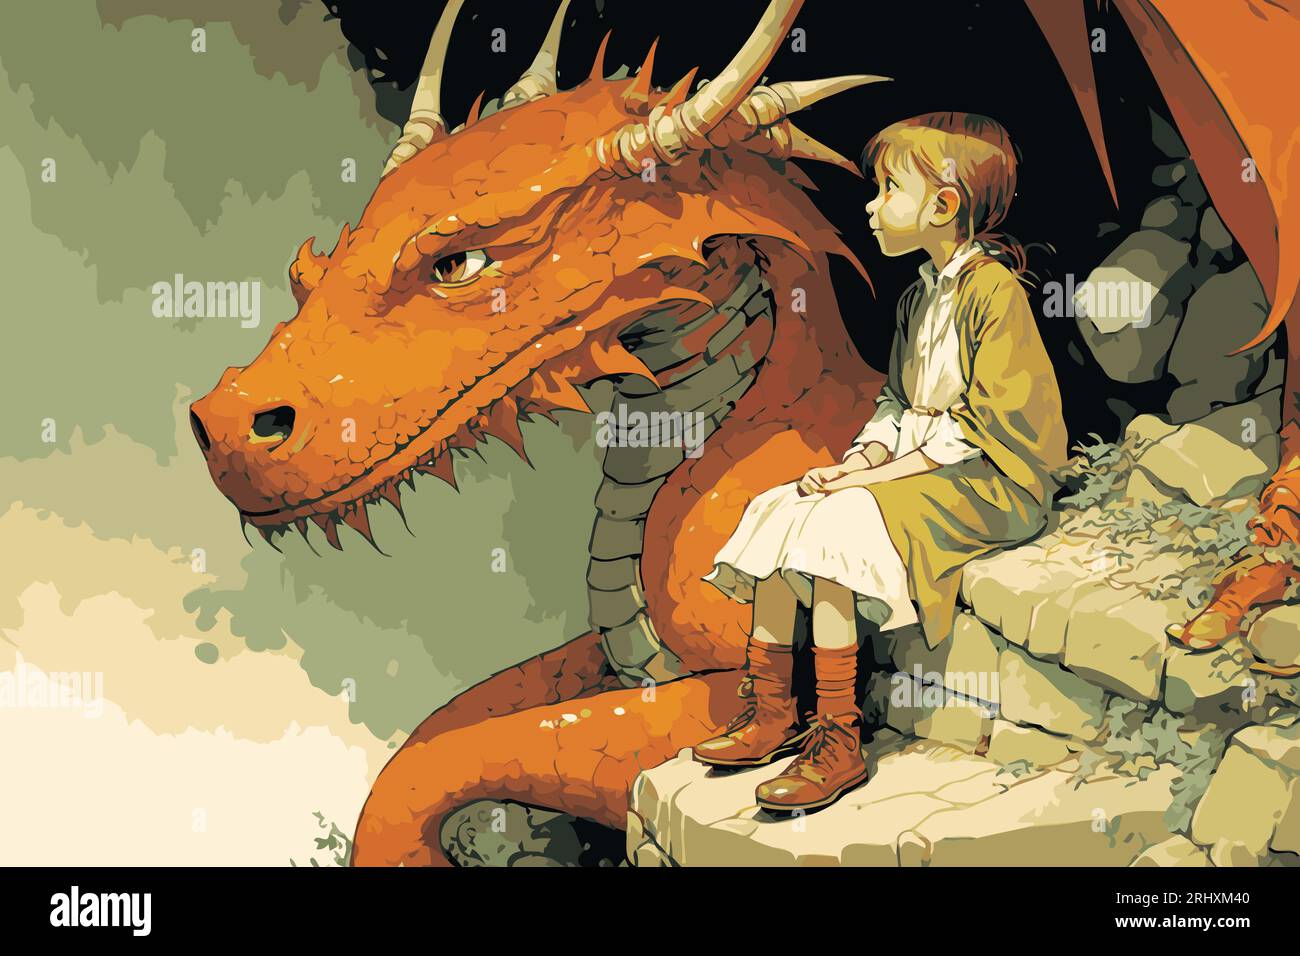 Una giovane ragazza e il suo amico Dragon. Concetto di amicizia/avventura. Art. Vettoriale Fantasy, Storybook, personaggio delle favole. Graphic novel, stile fumetto. Illustrazione Vettoriale